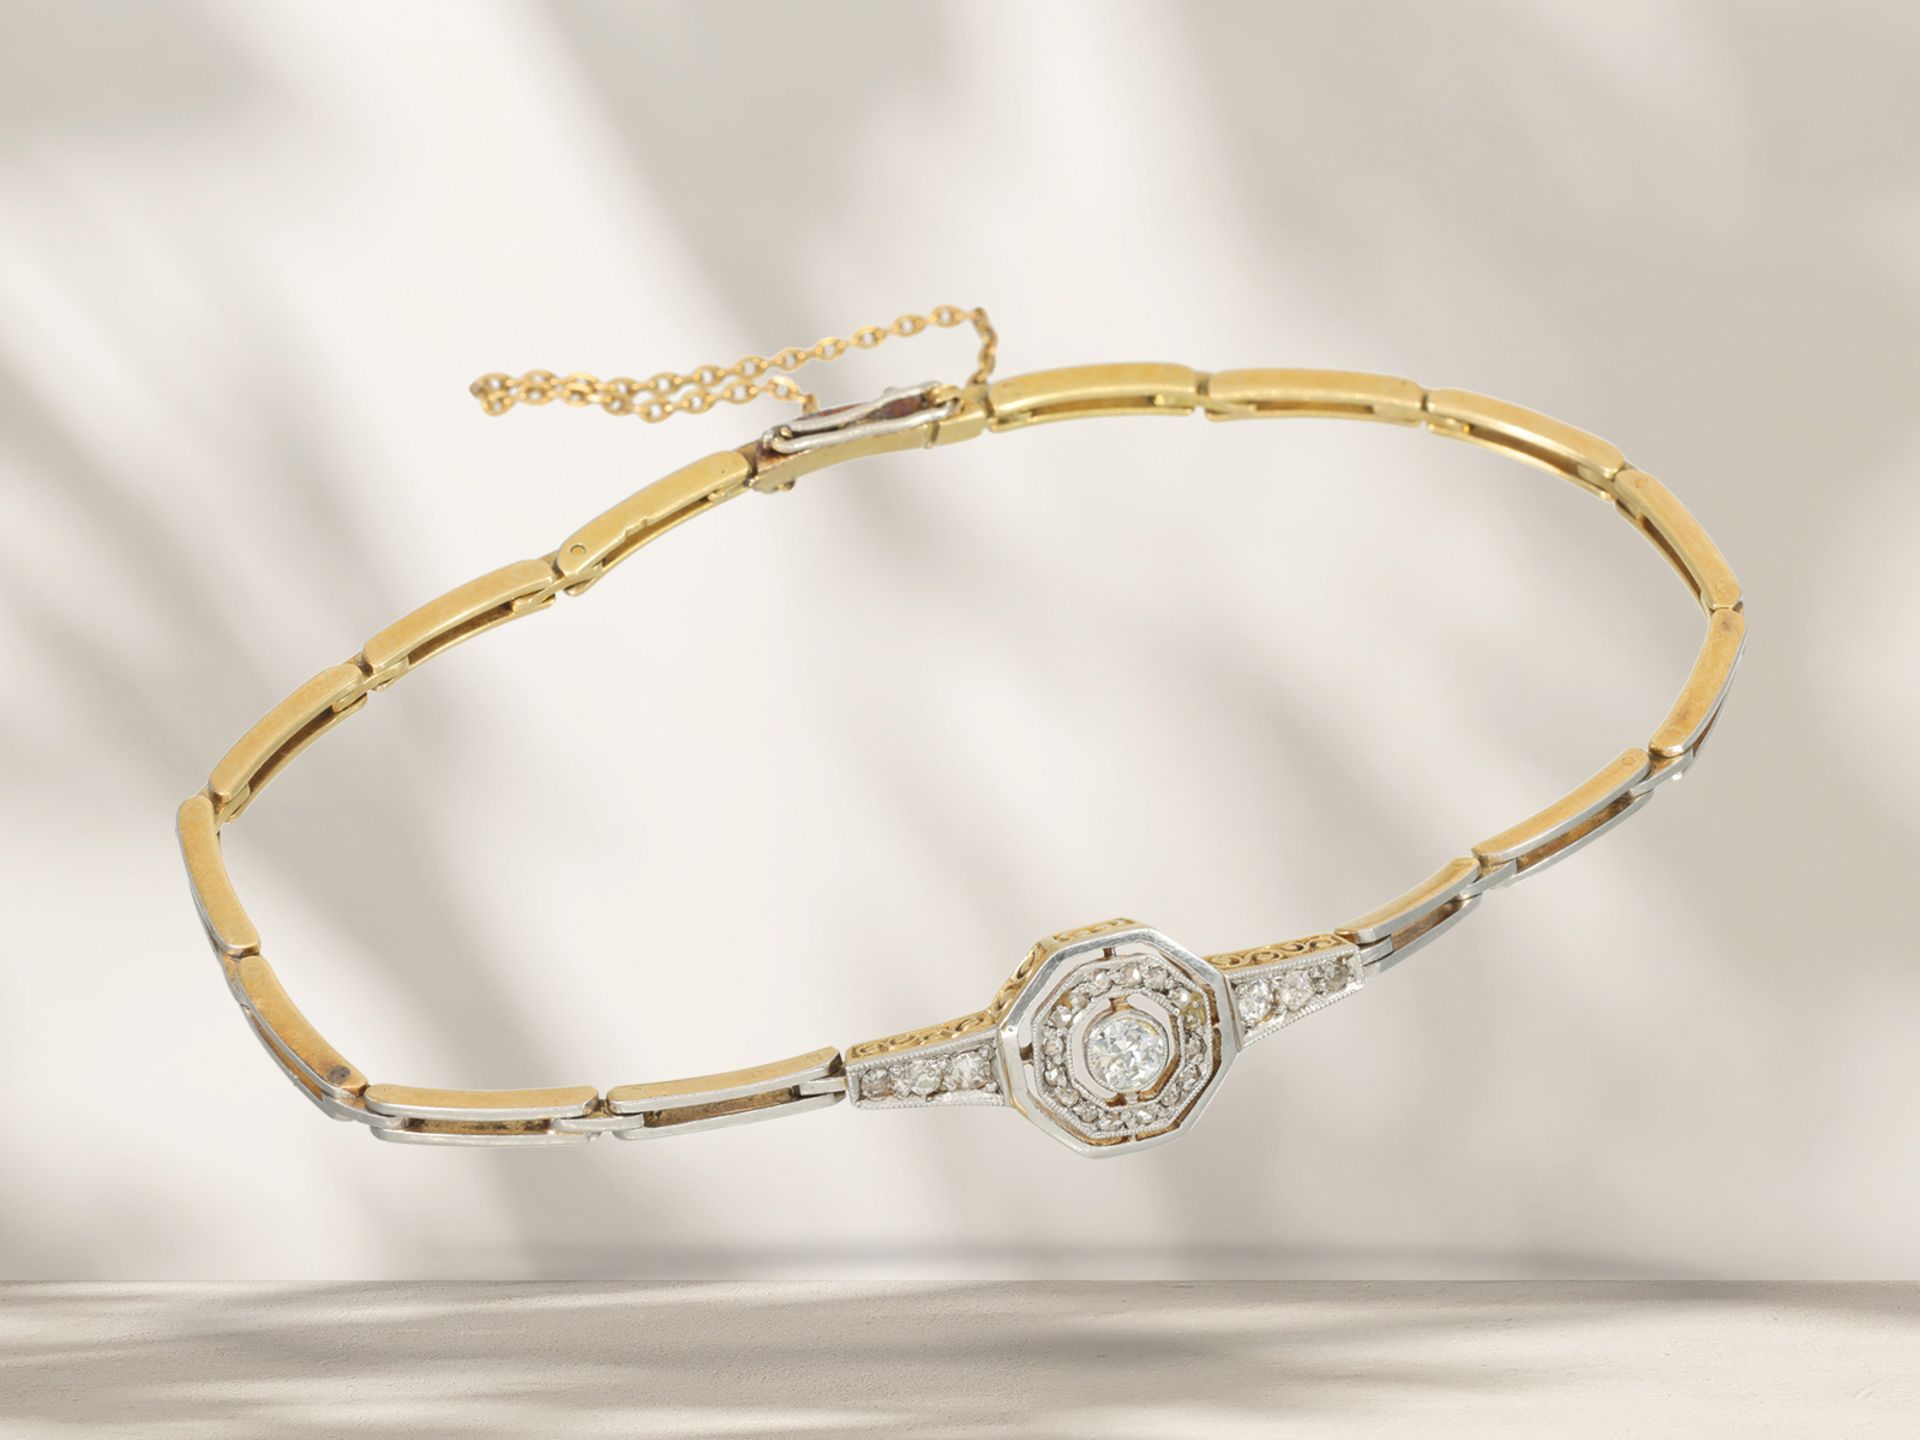 Armband: sehr schönes antikes und feines Armband mit Diamantbesatz, 18K Gelbgold, platiniert - Bild 3 aus 3